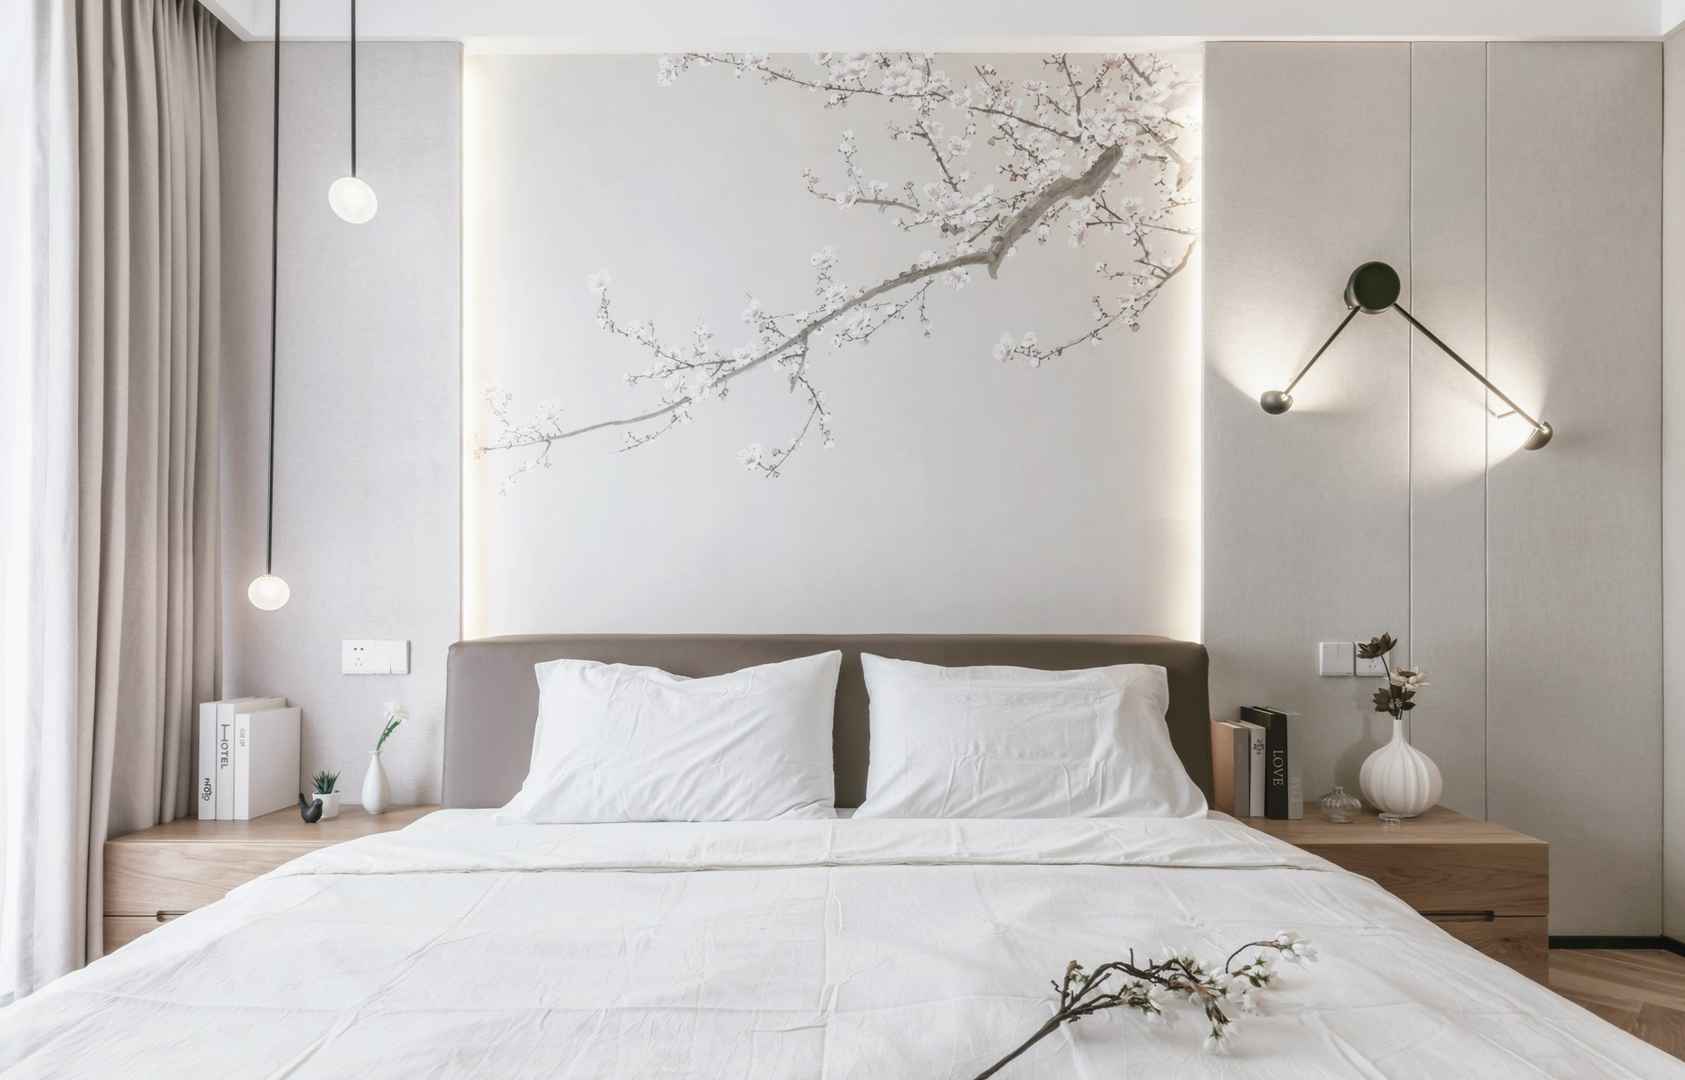 现代日式两居床头背景墙装修效果图